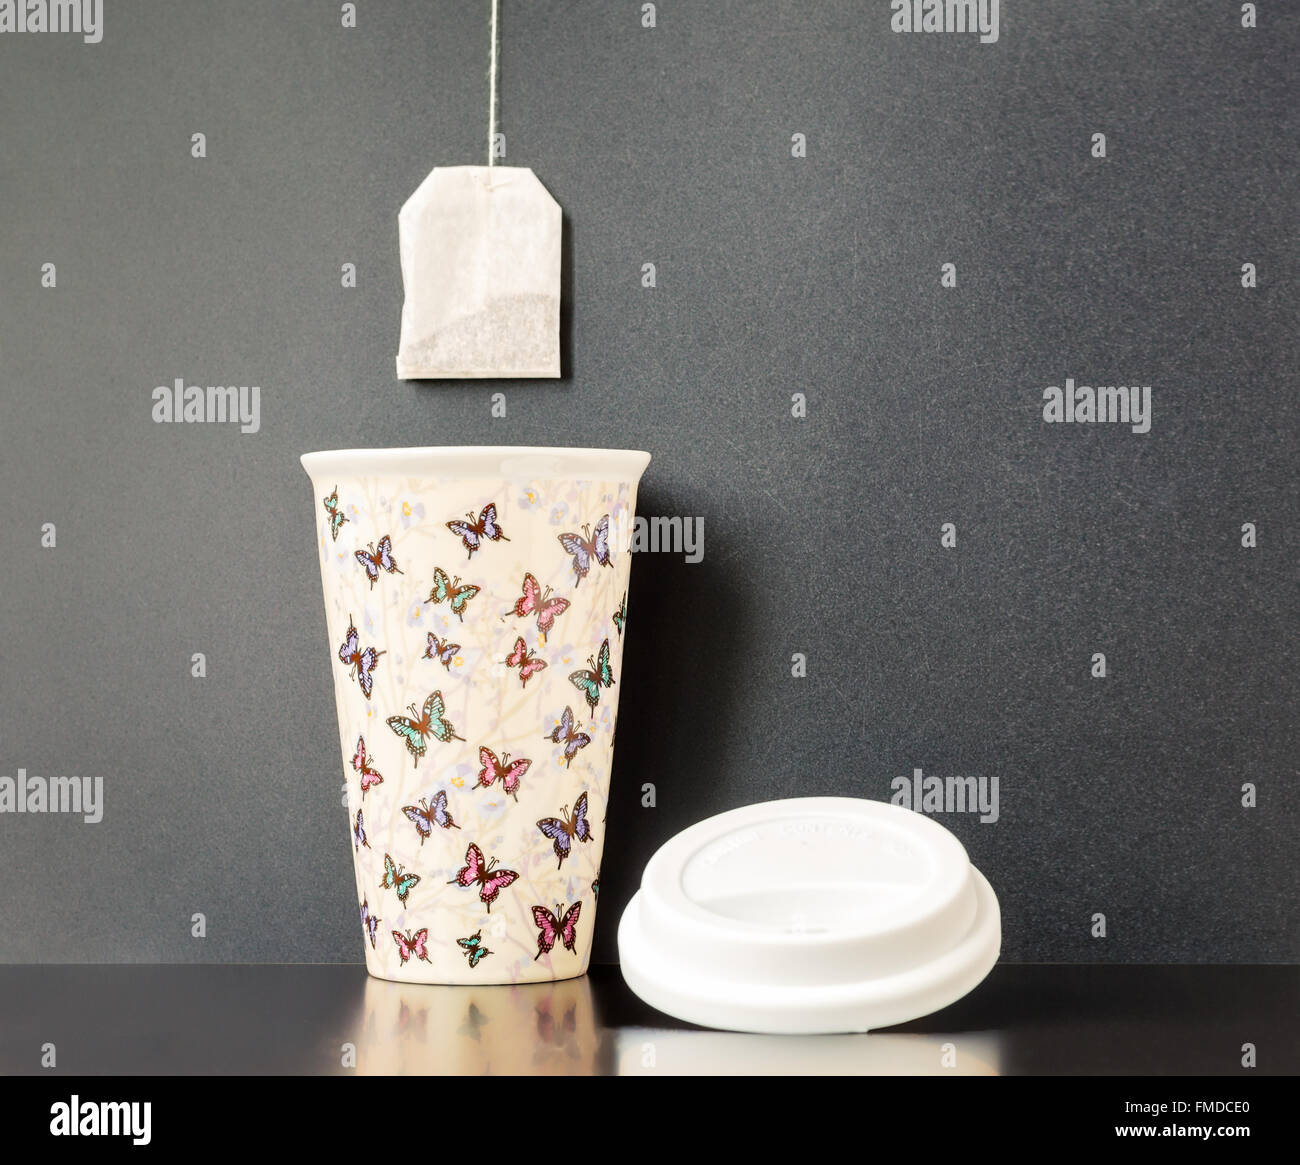 Keramik isoliert Tasse mit bunten Schmetterling Muster mit dunkelgrauen Hintergrund und einen Teebeutel drüber hängen. Stockfoto